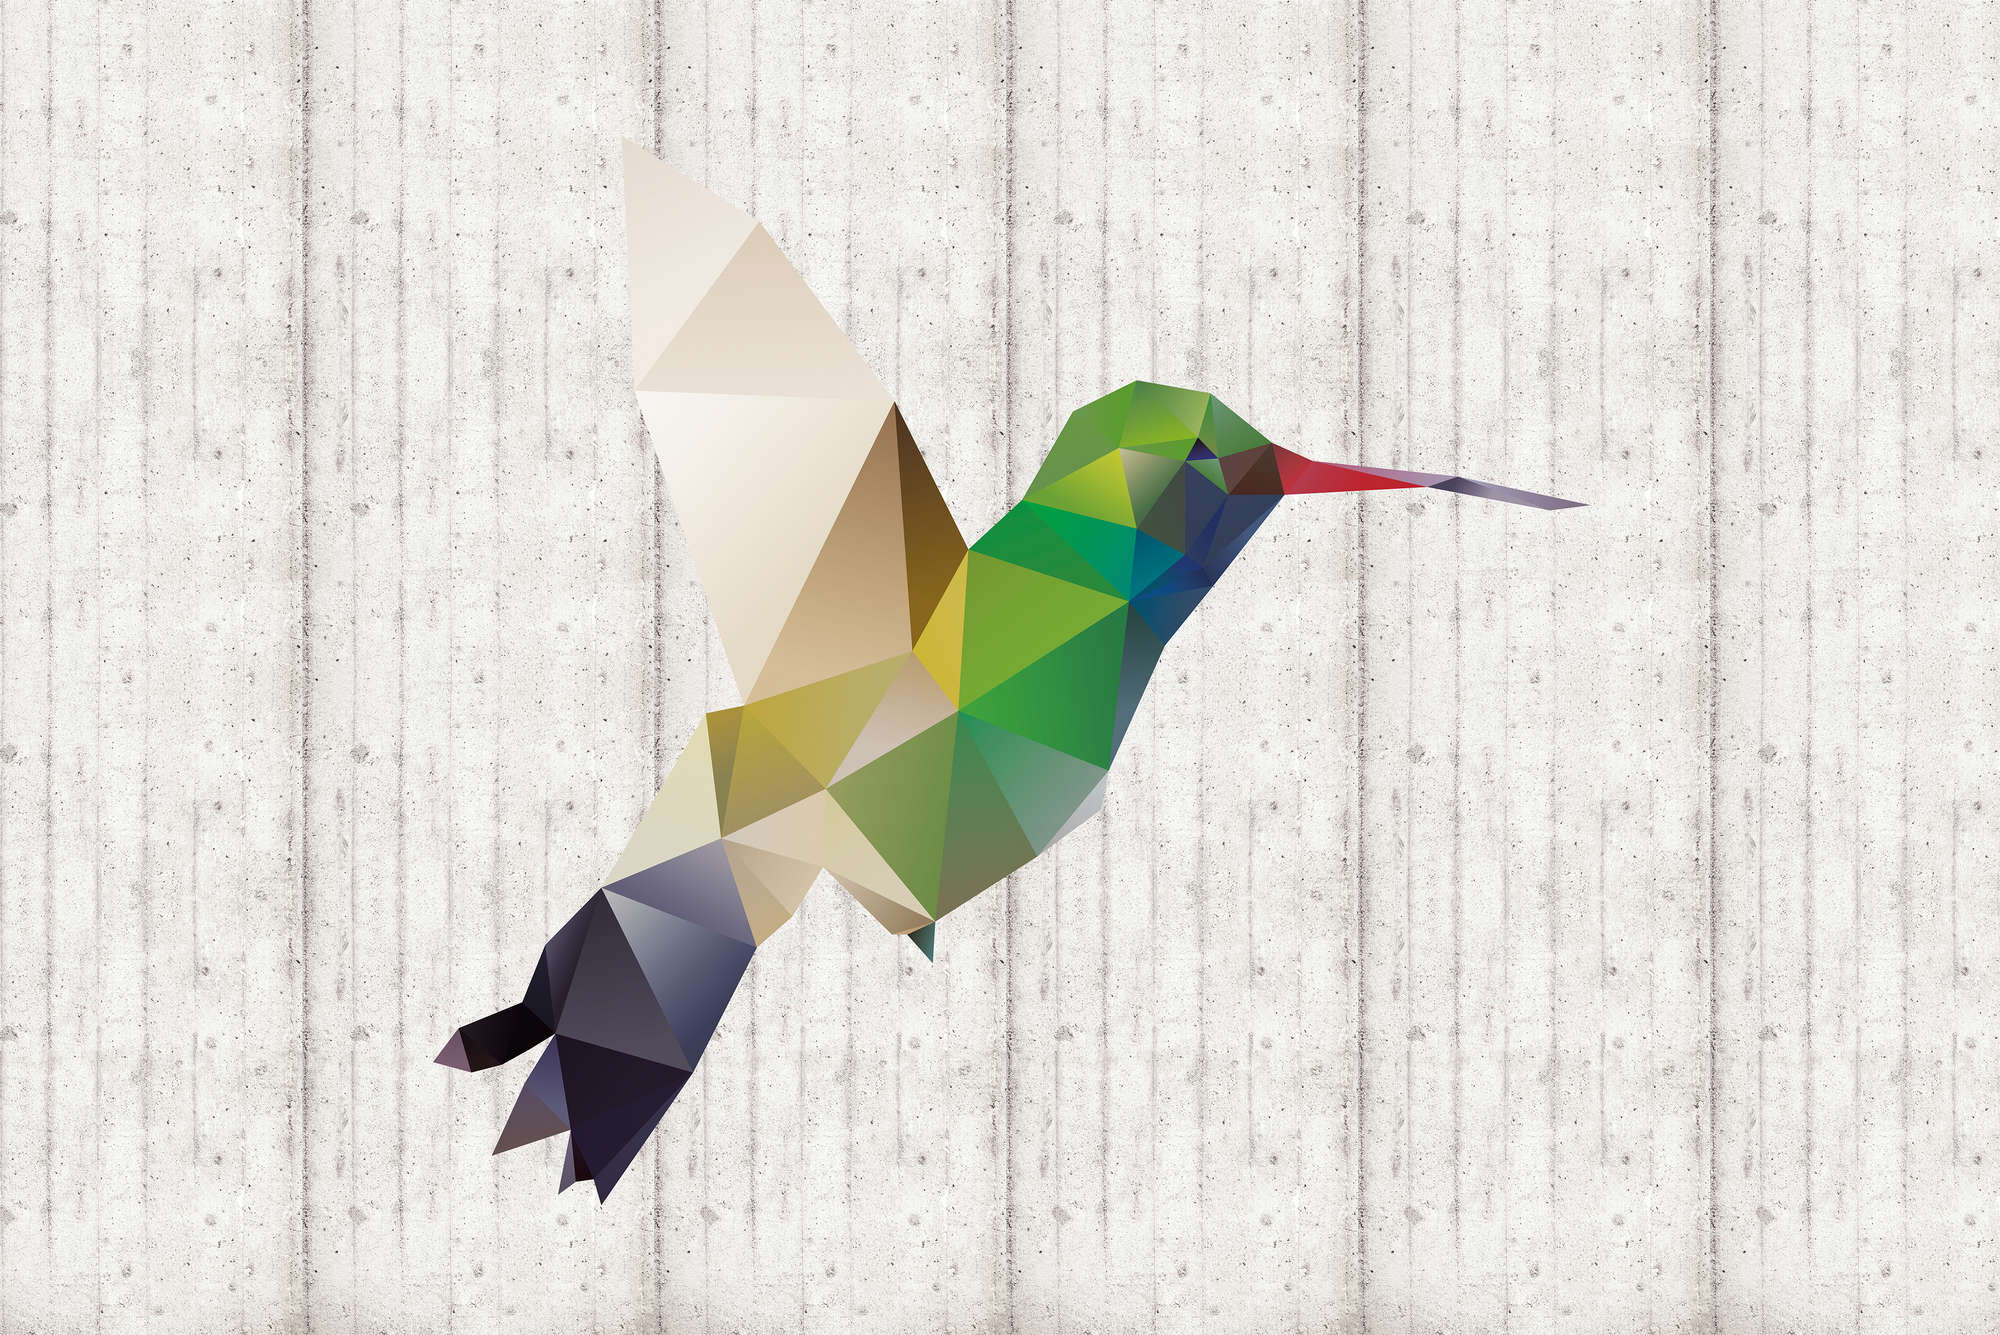             Papel pintado gráfico con motivo de colibrí sobre tela no tejida lisa de alta calidad
        